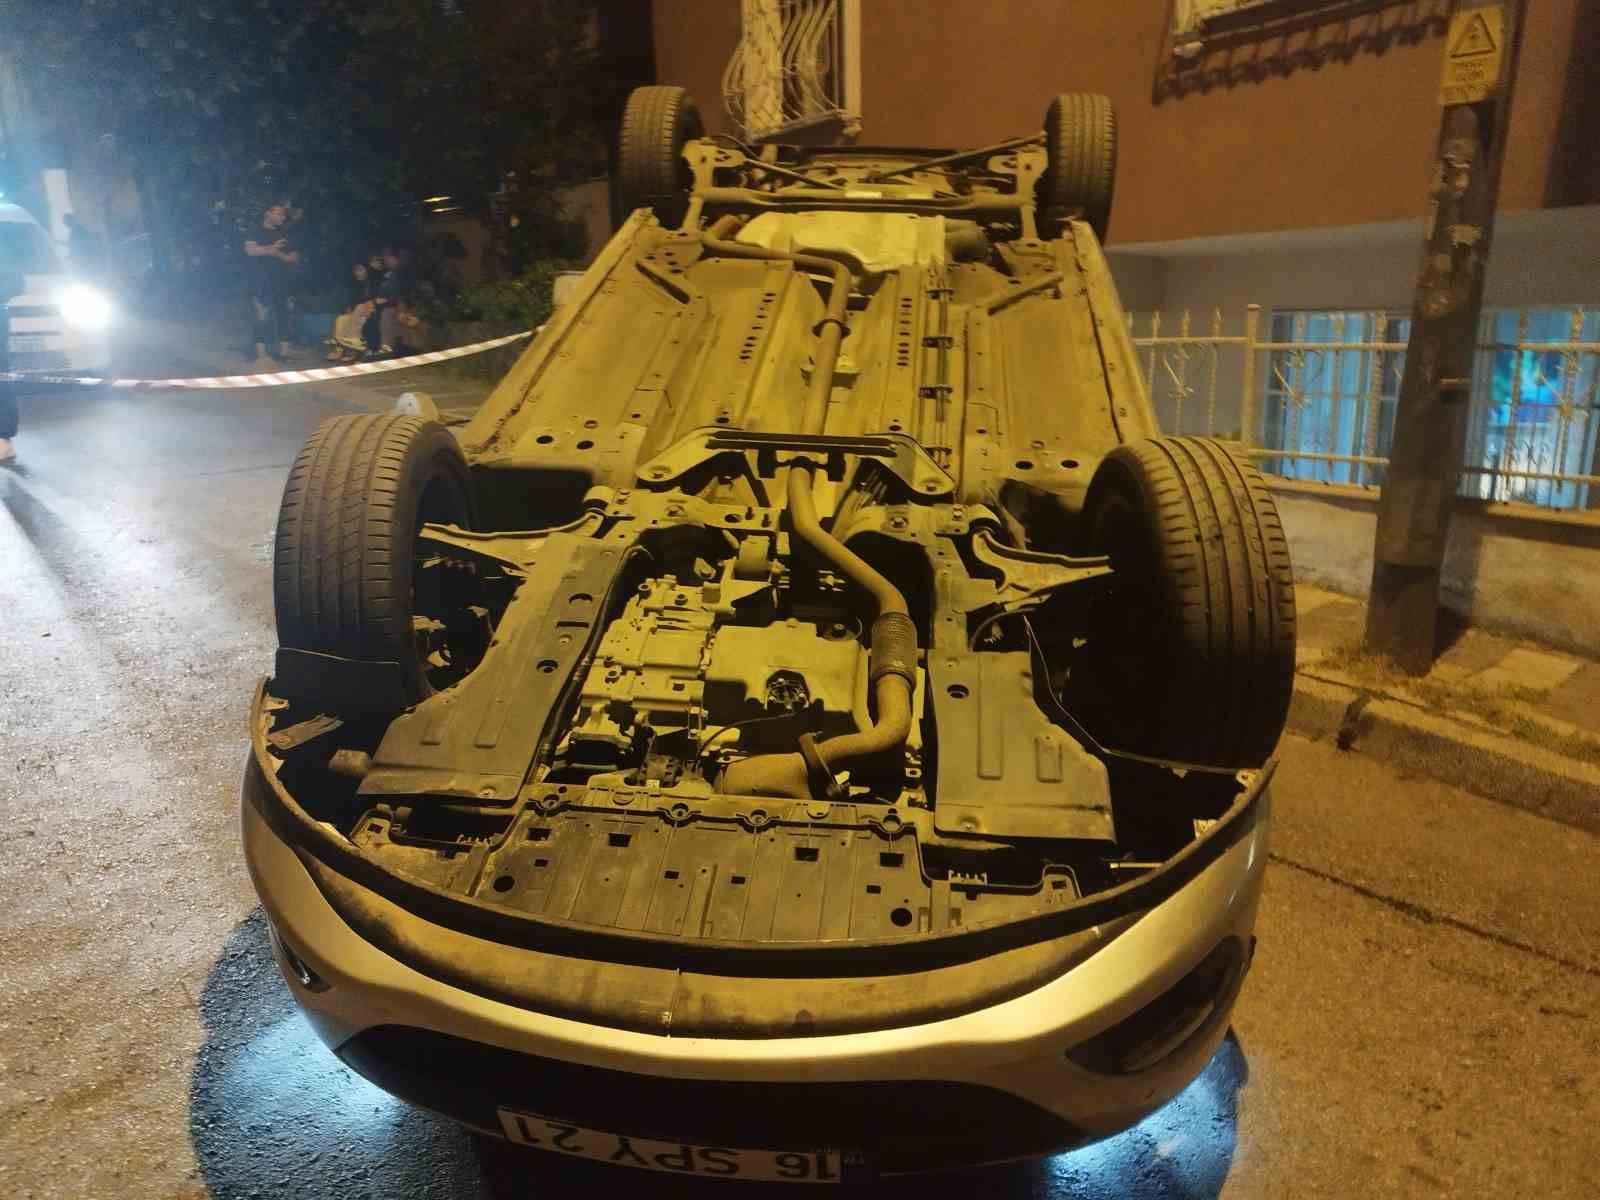 Üsküdar’da park halindeki araca çarpan otomobil takla attı: 1 yaralı
